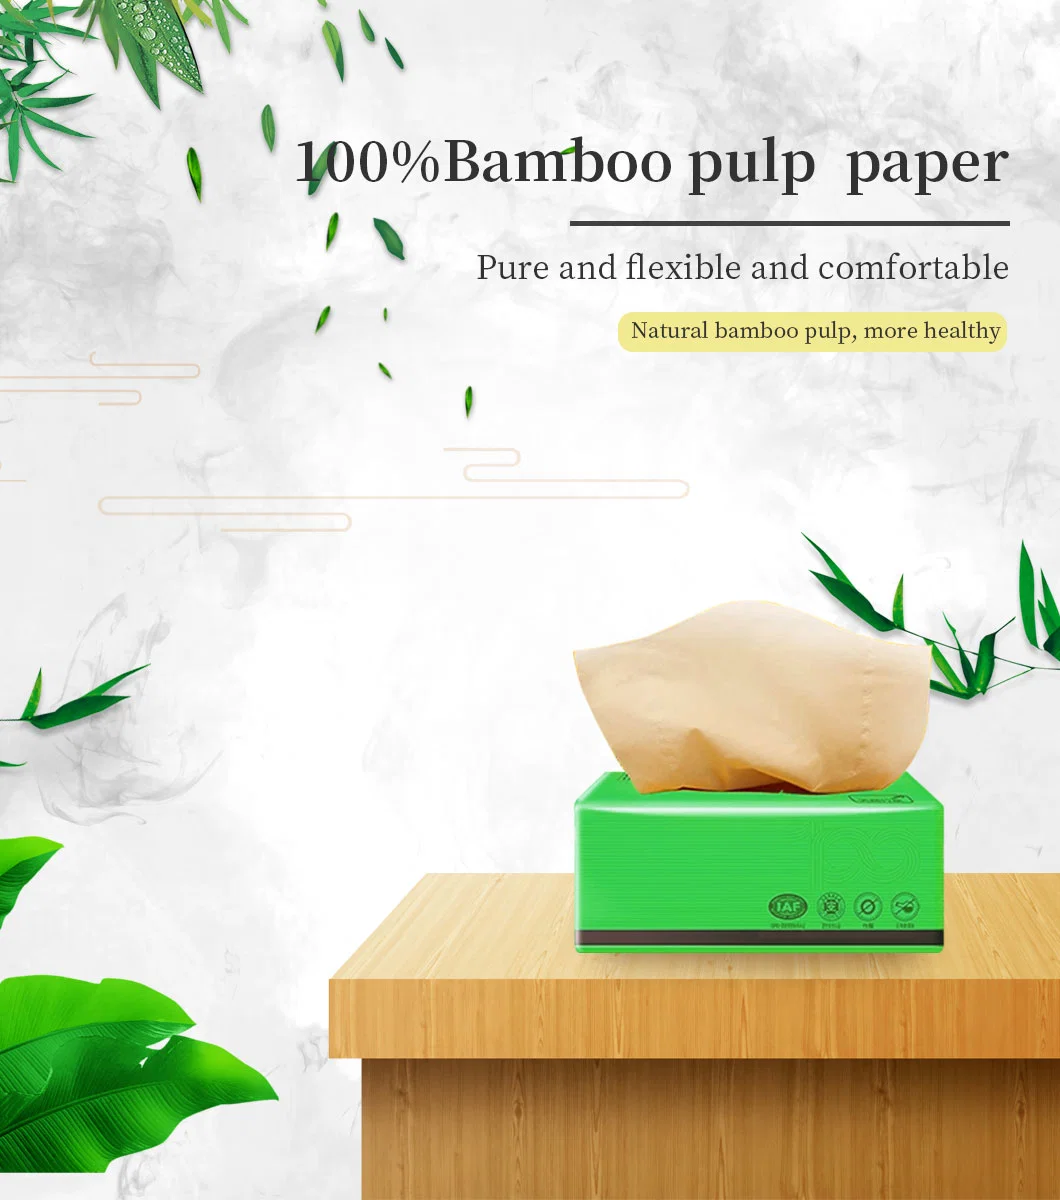 Bambu facial Tissue Health e Safe I material natural I Tamanho Mini adequado de alta qualidade I.